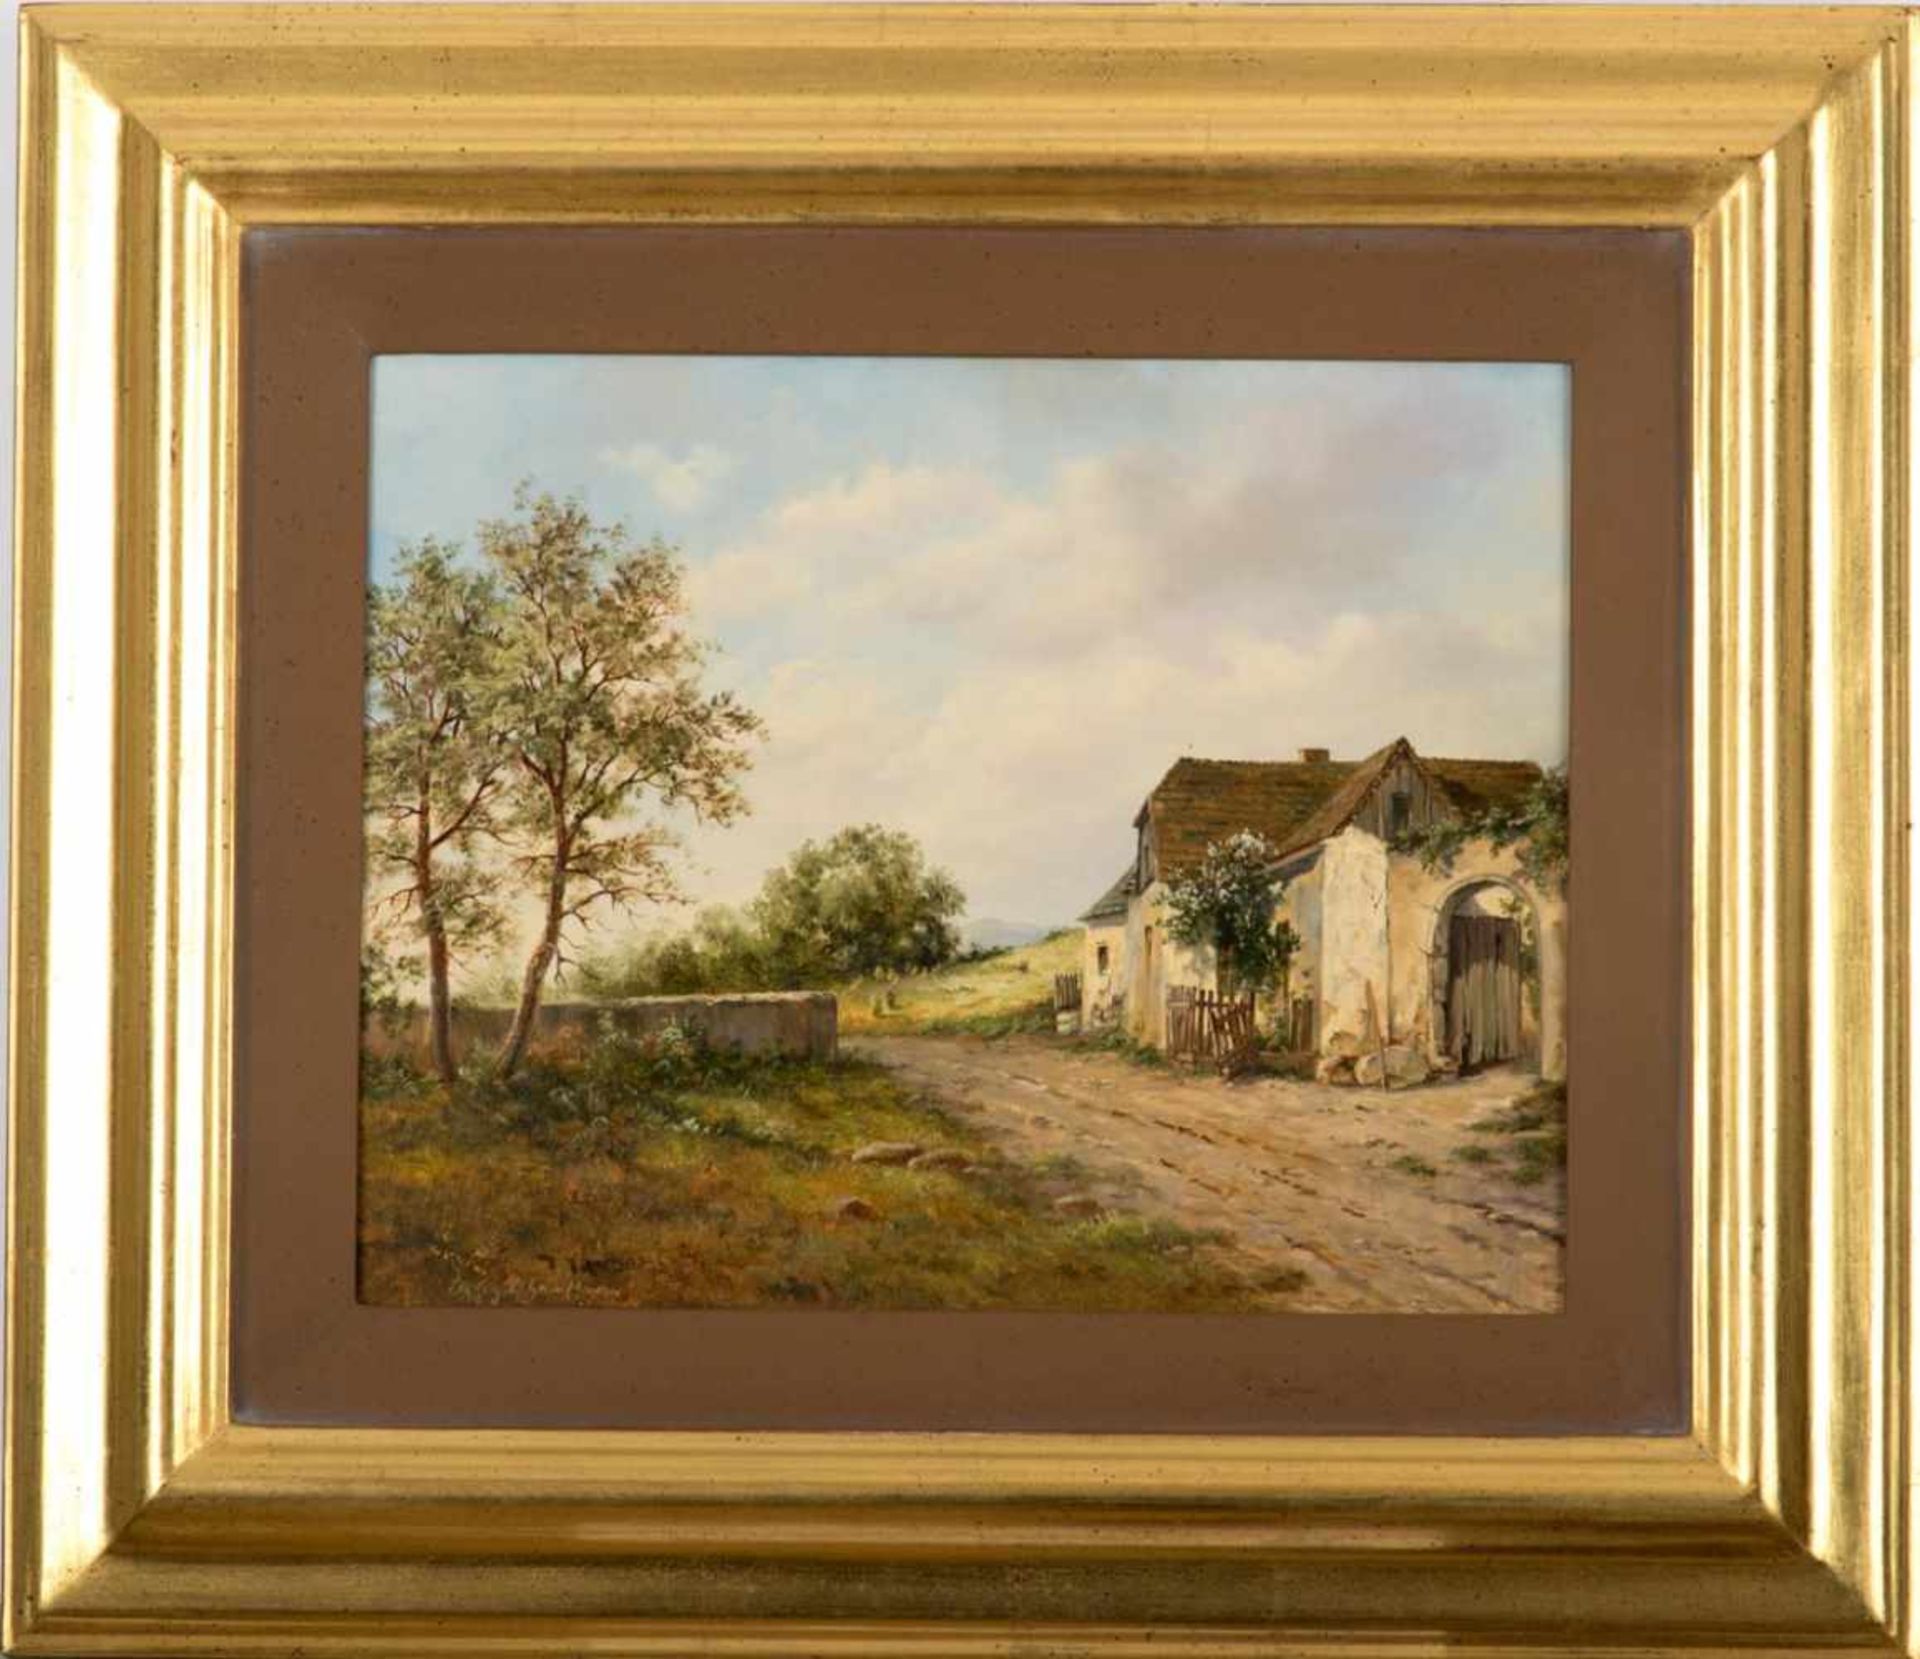 Günther-Gagel, EleonoreGeb. 1947. Bauernhaus am Fluß. Öl/Holz. 24 x 30 cm. R.